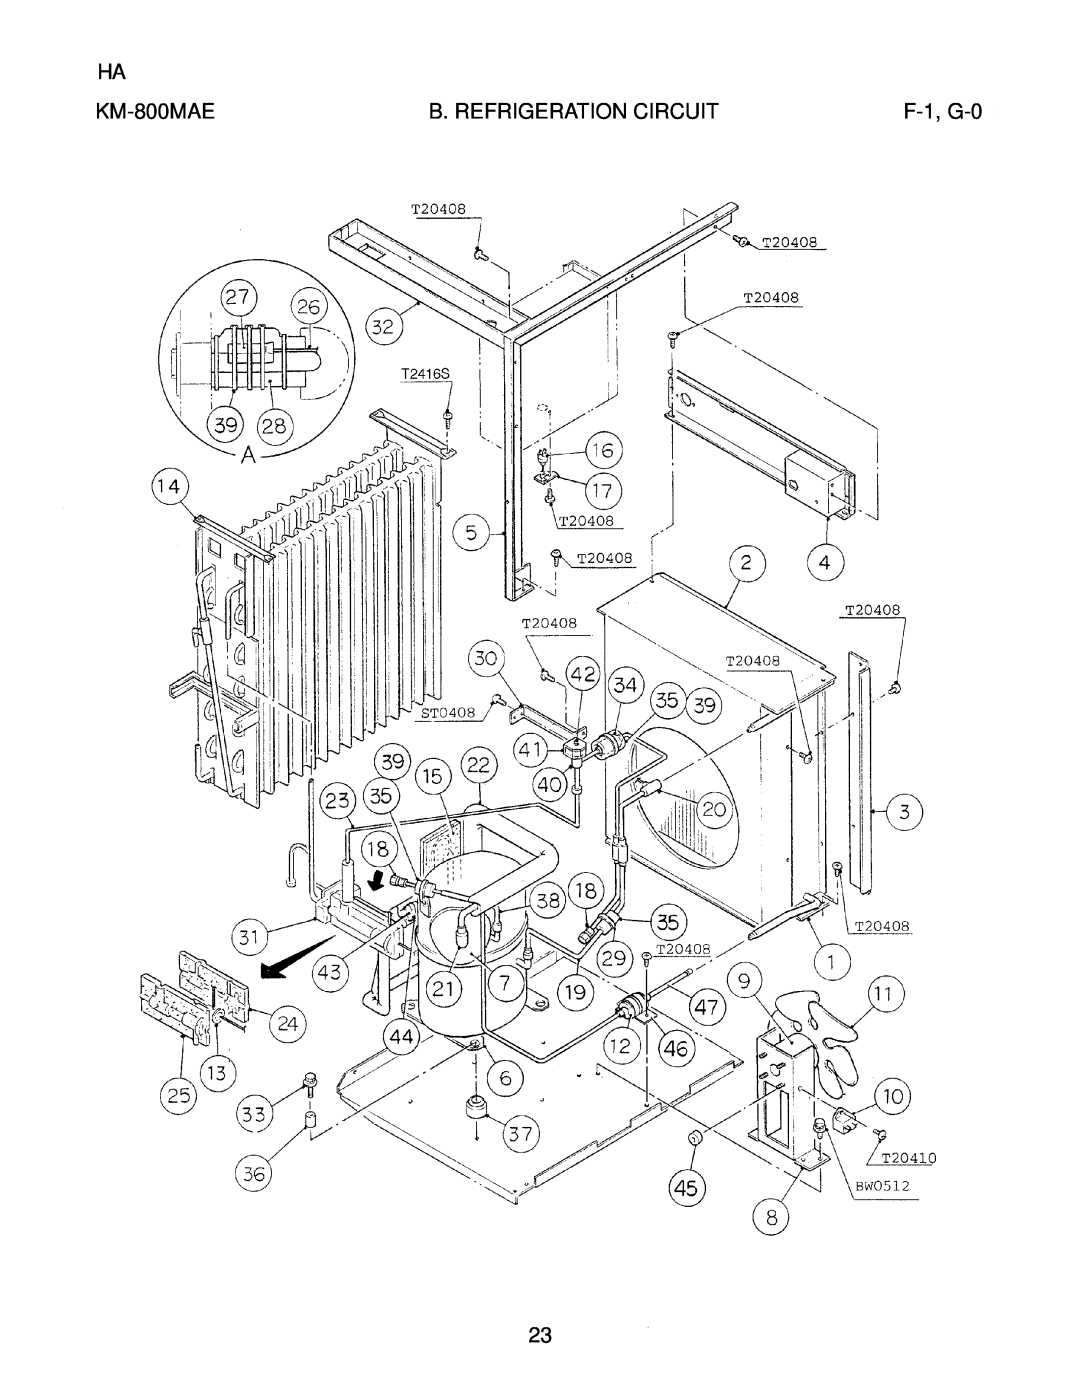 Hoshizaki KM-800MRE, KM-800MWE manual F-1, G-0, KM-800MAE, B. Refrigeration Circuit 